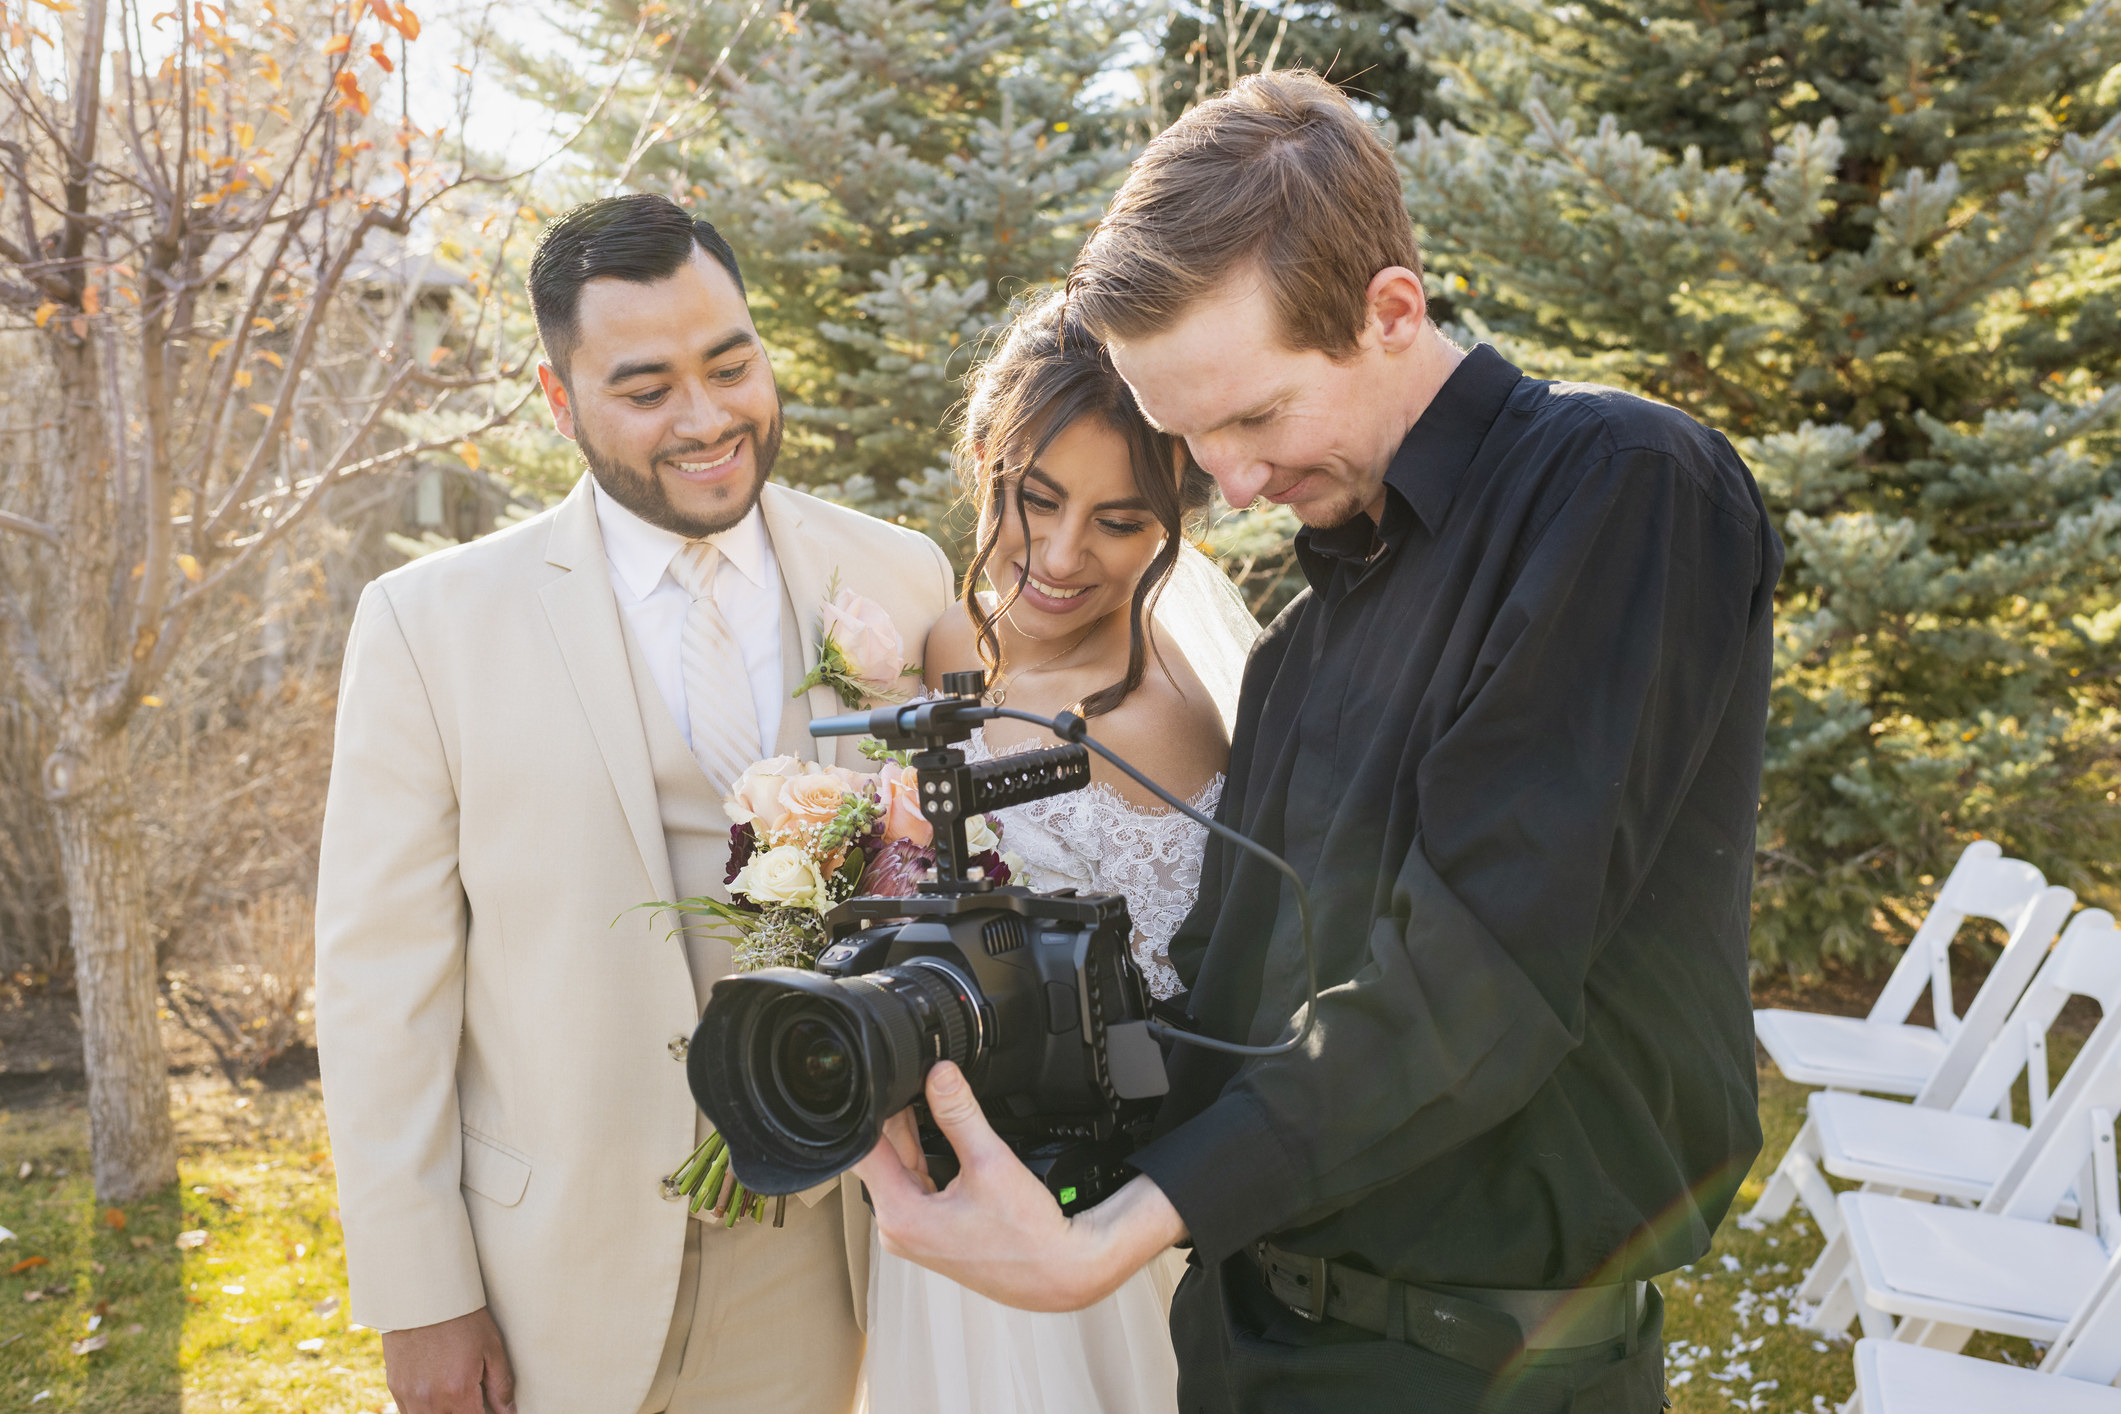 A photographer showing a couple their wedding photos